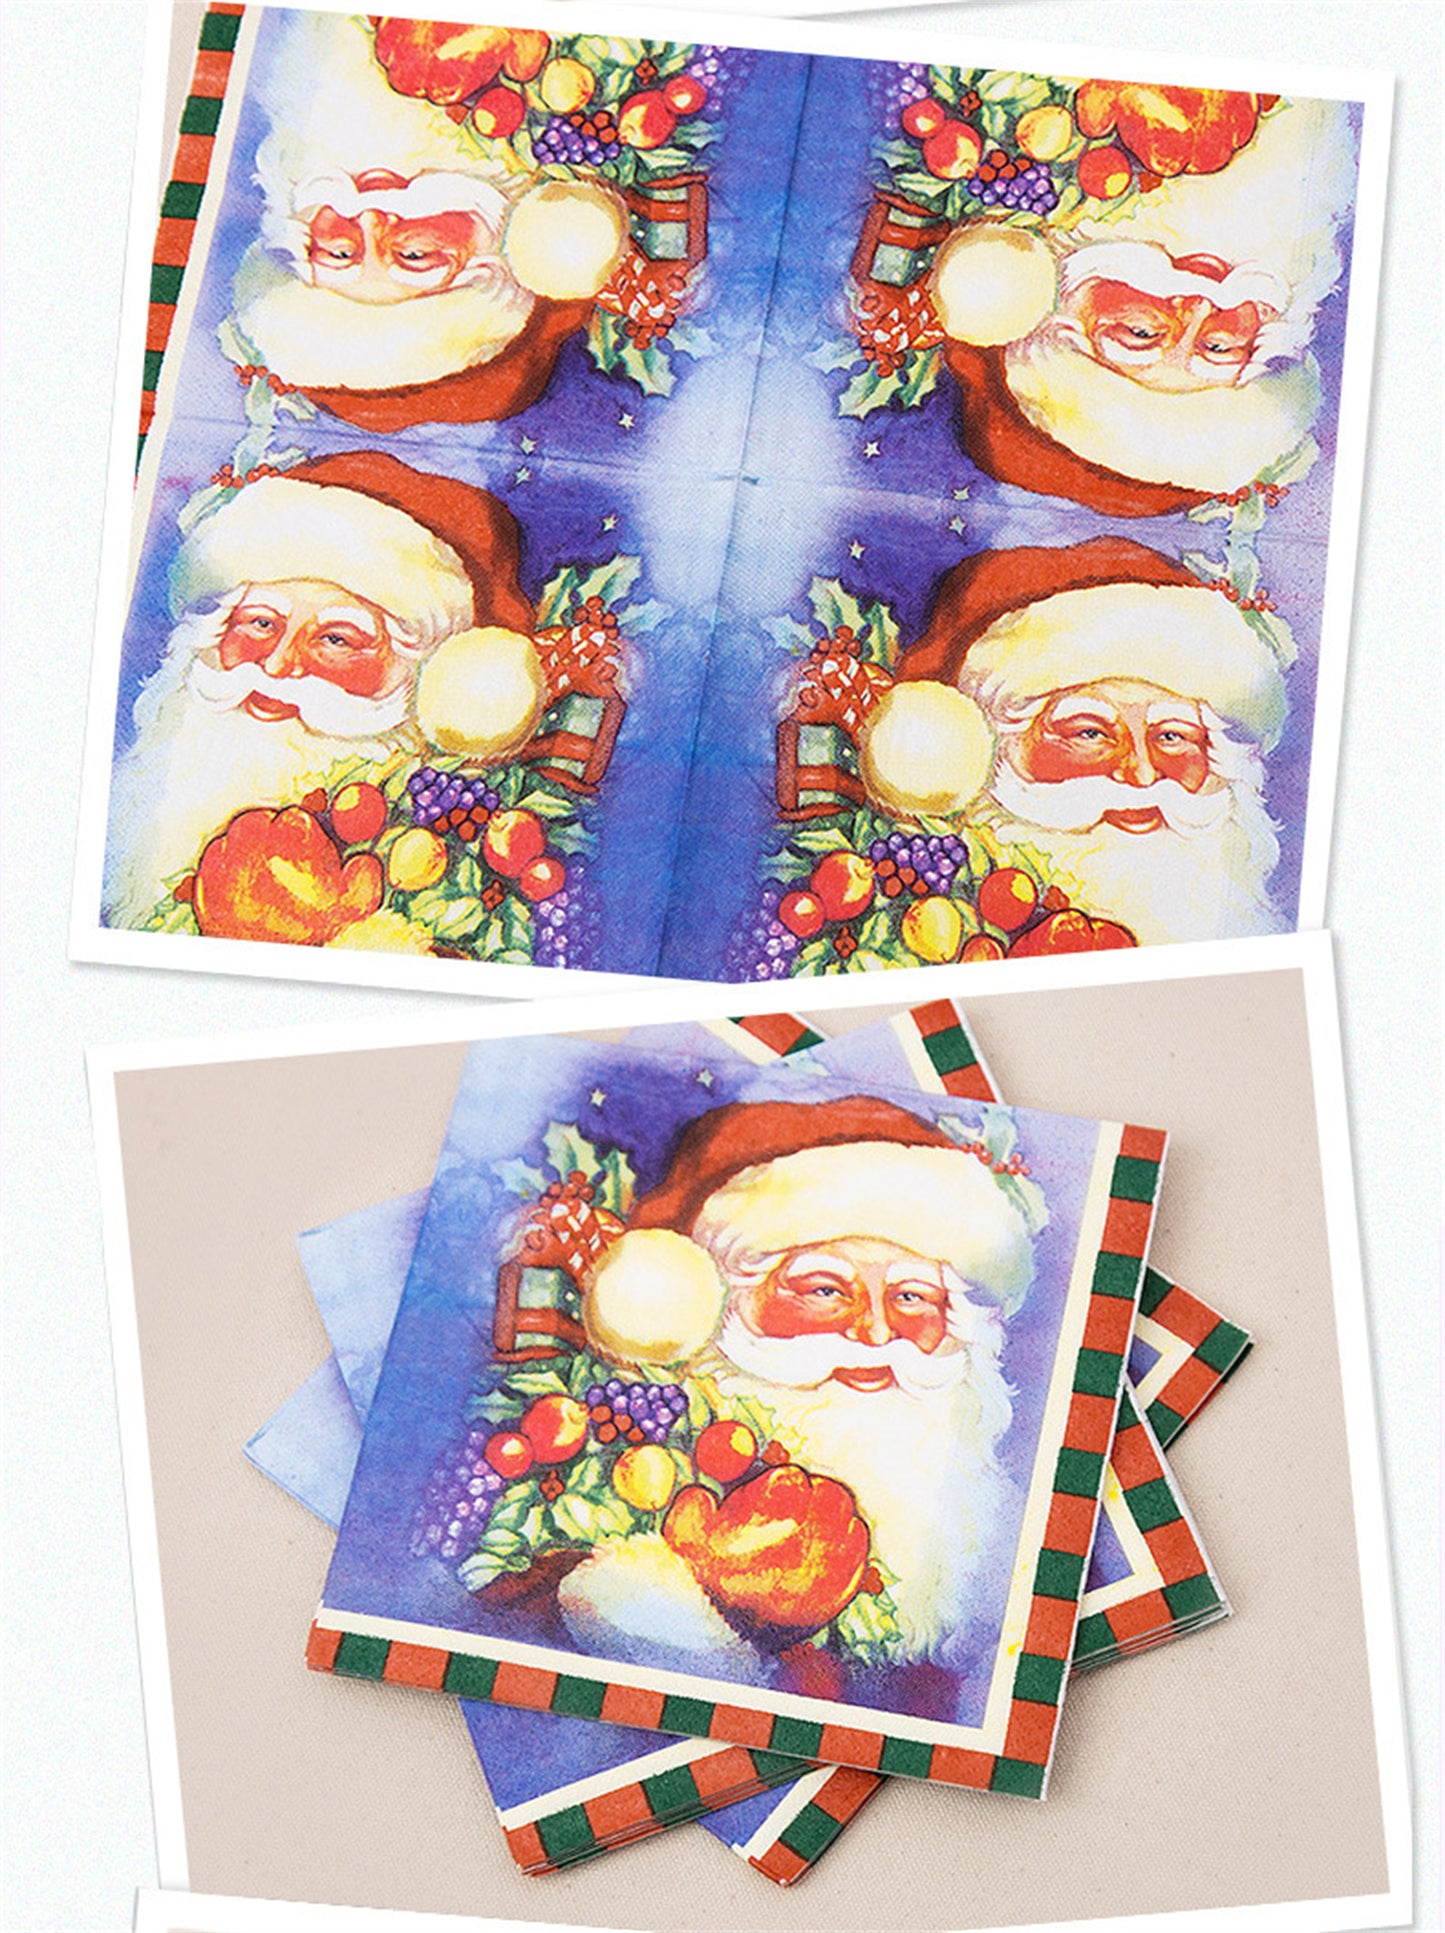 Santa Claus printed paper towels